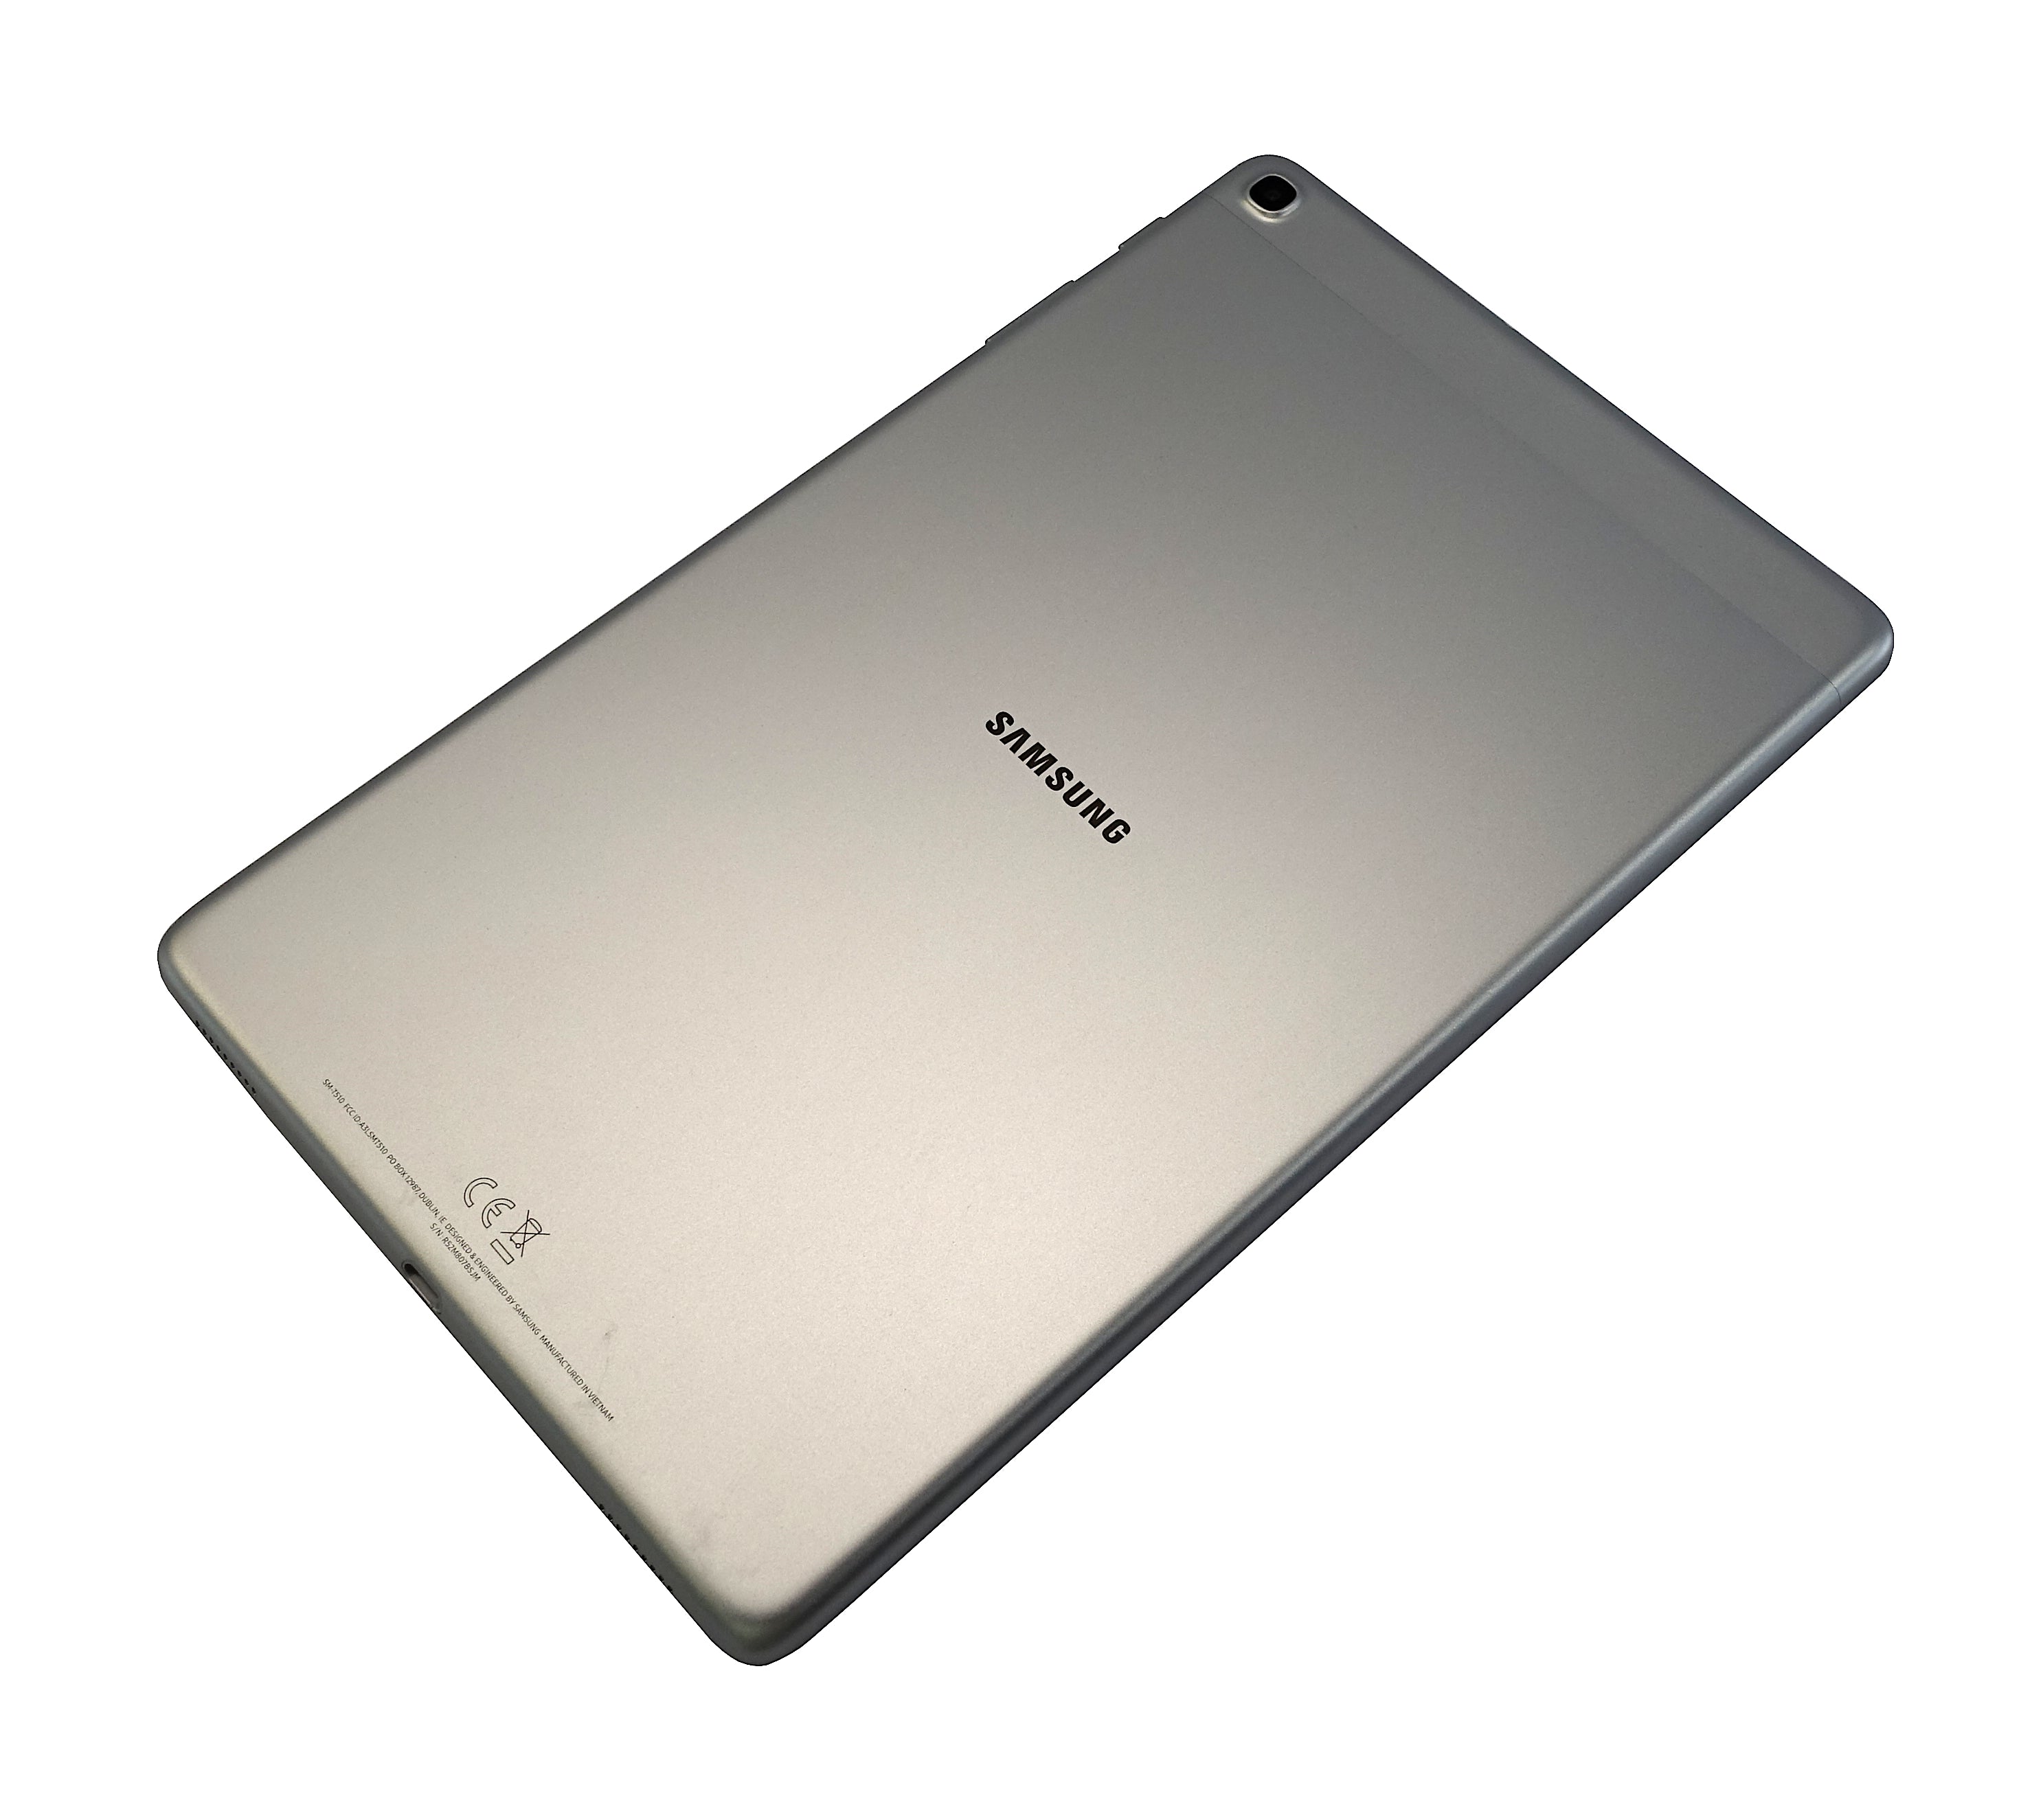 Samsung Galaxy Tab A (2019) Tablet, 10.1", 32GB, WiFi, Silver, SM-T510